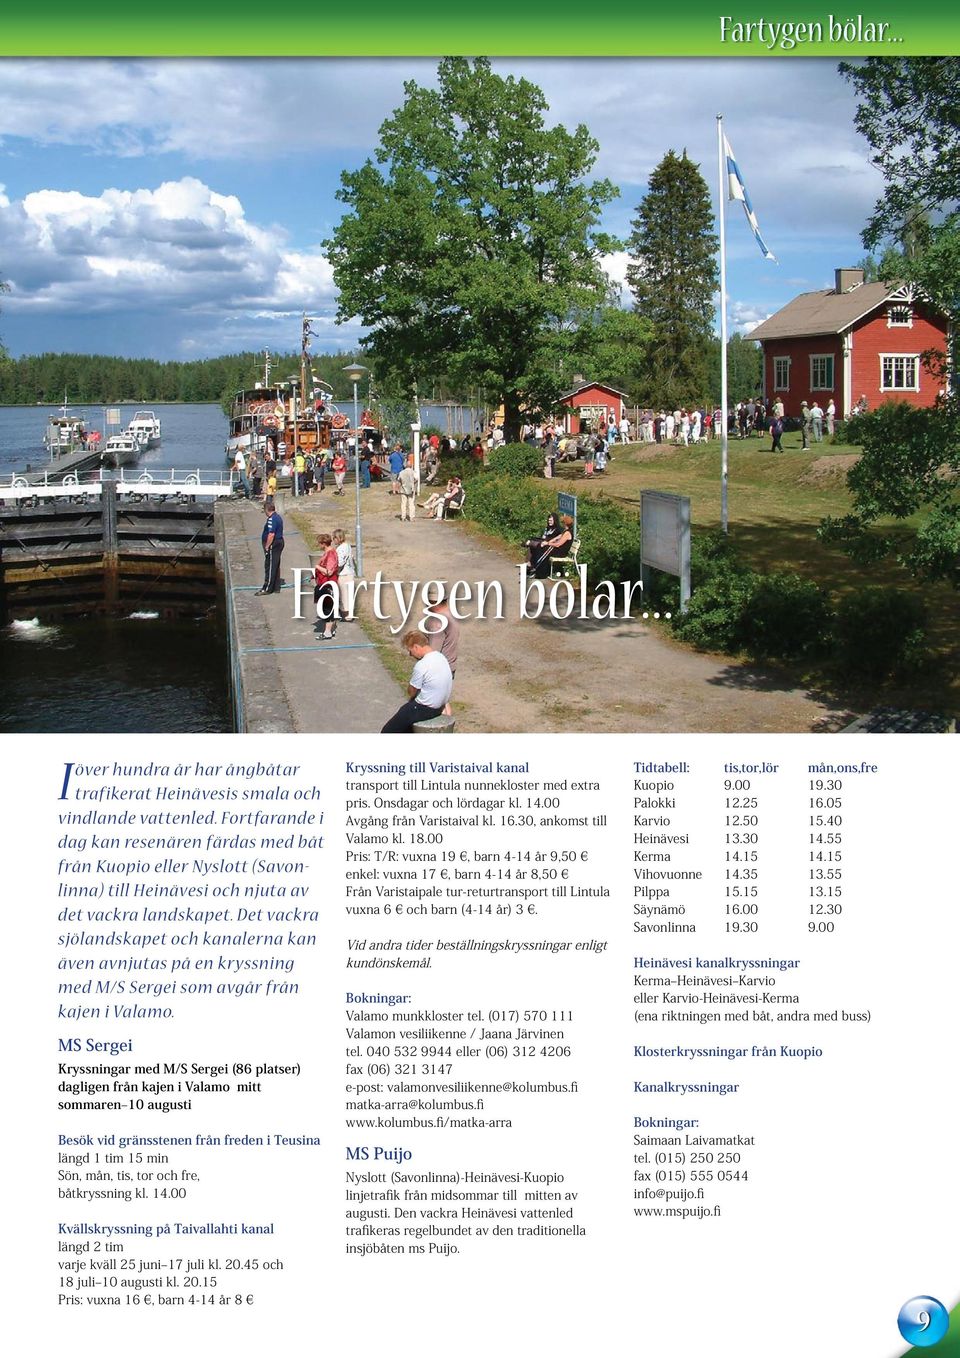 Fortfarande i dag kan resenären färdas med båt från Kuopio eller Nyslott (Savonlinna) till